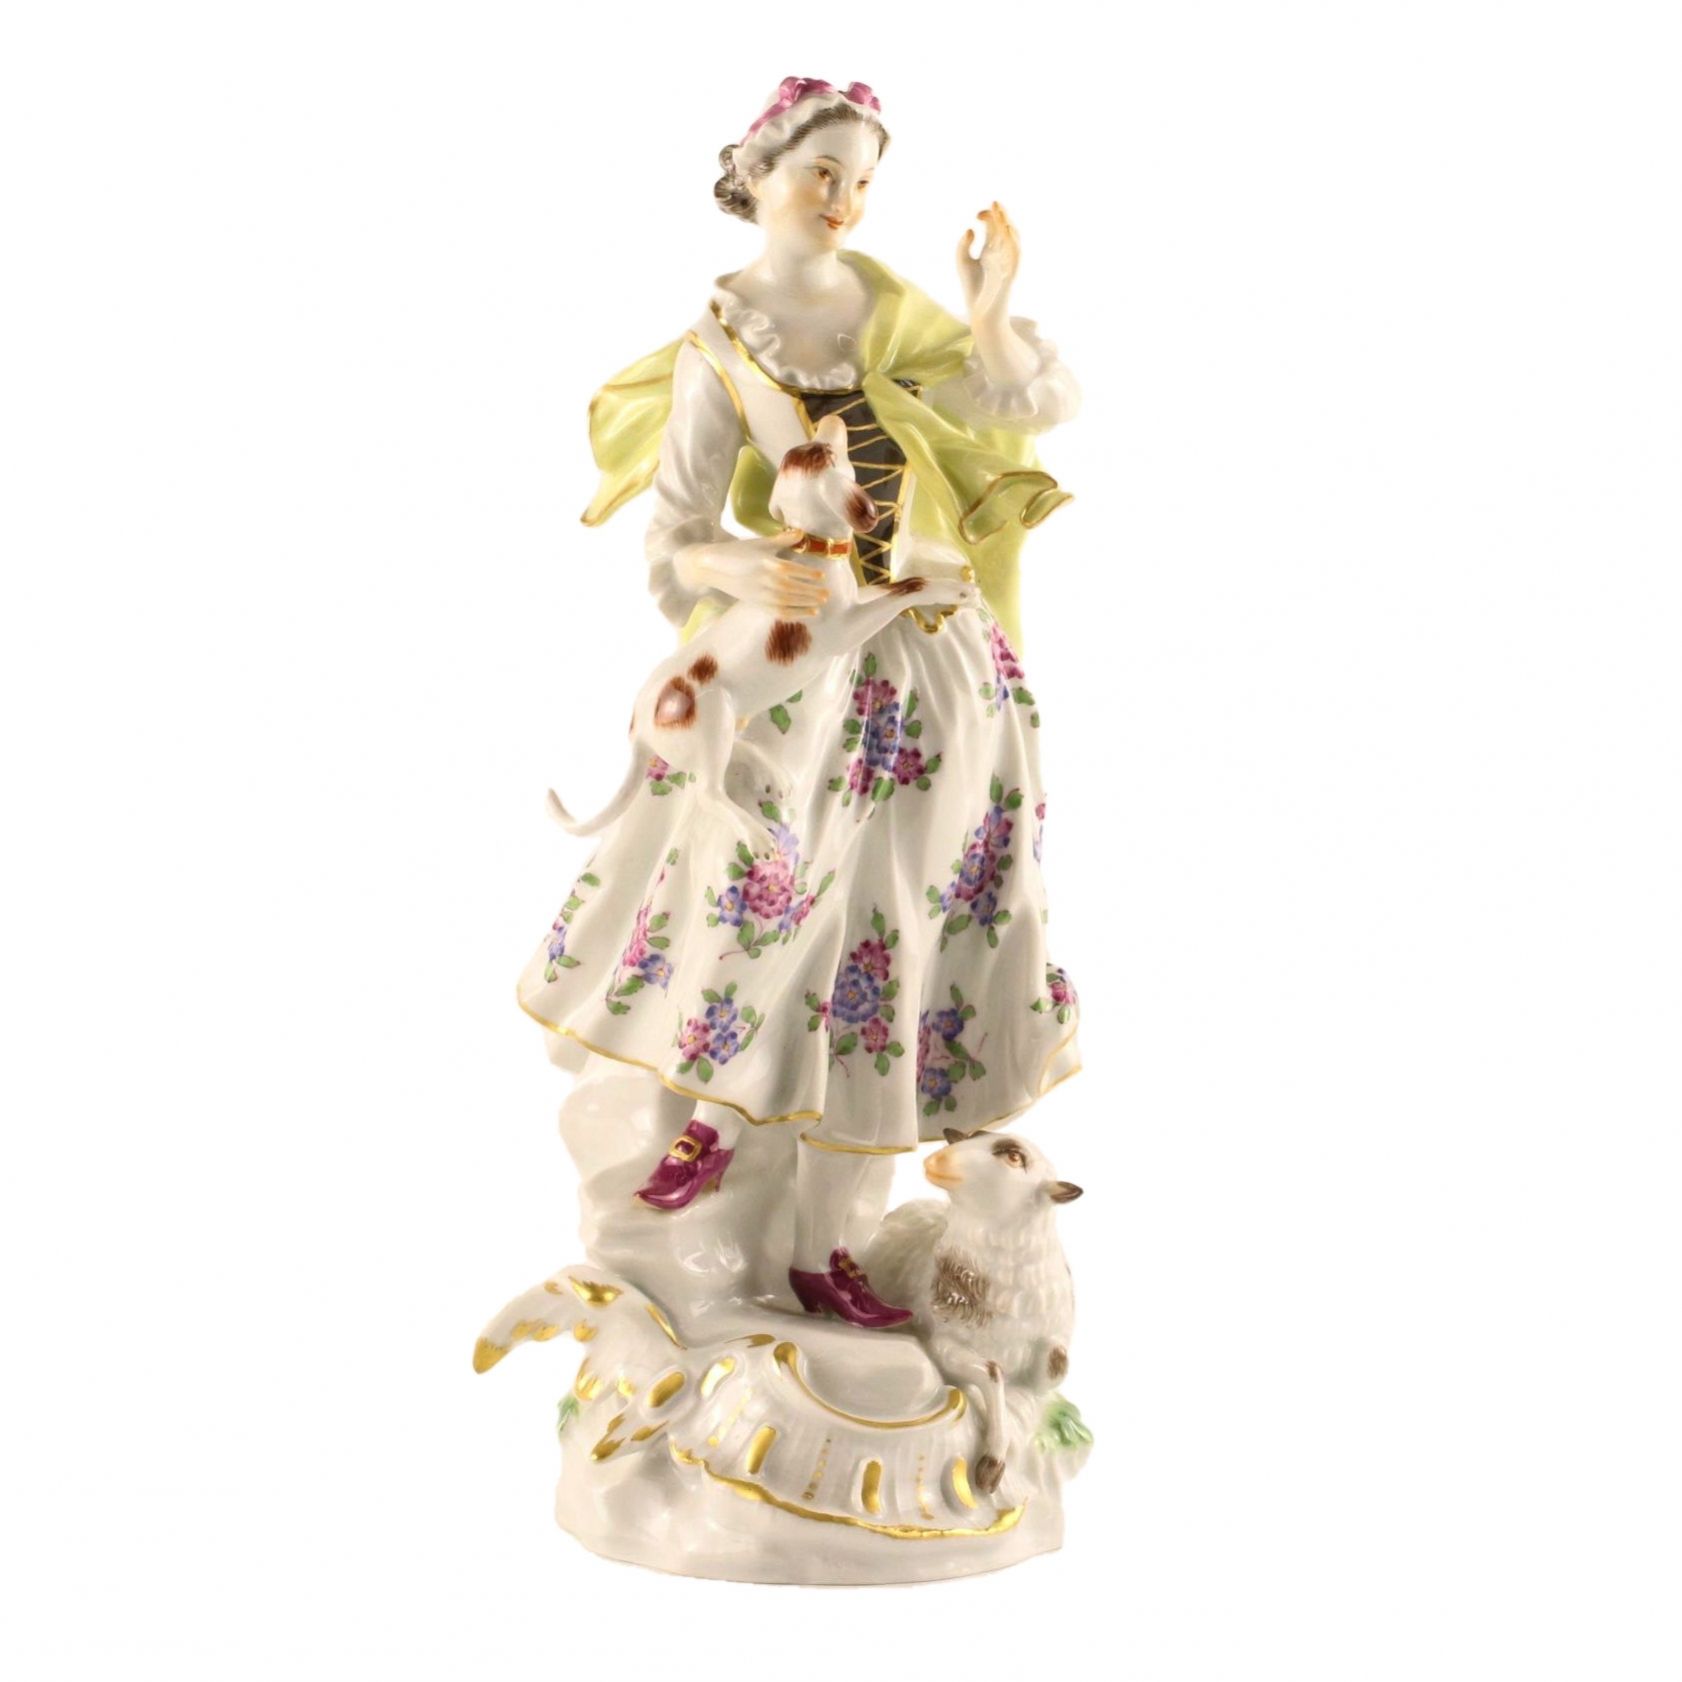 A-porcelain-figurine-Shepherdess-